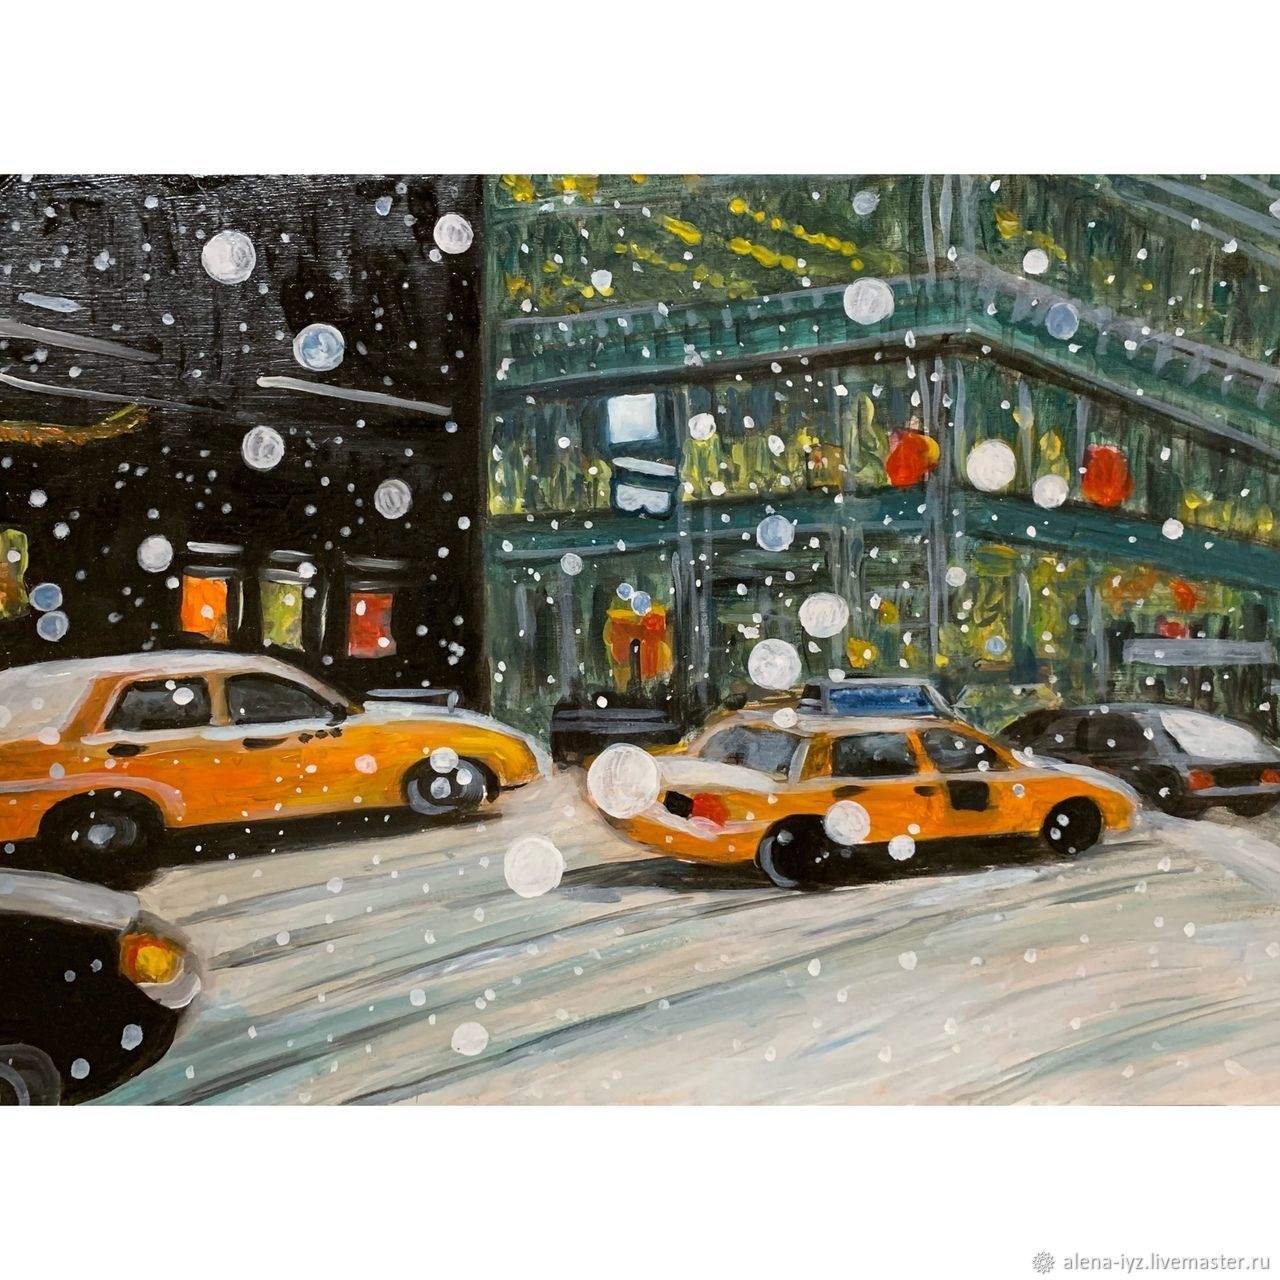  Снег в Нью-Йорке, Картины, Санкт-Петербург,  Фото №1